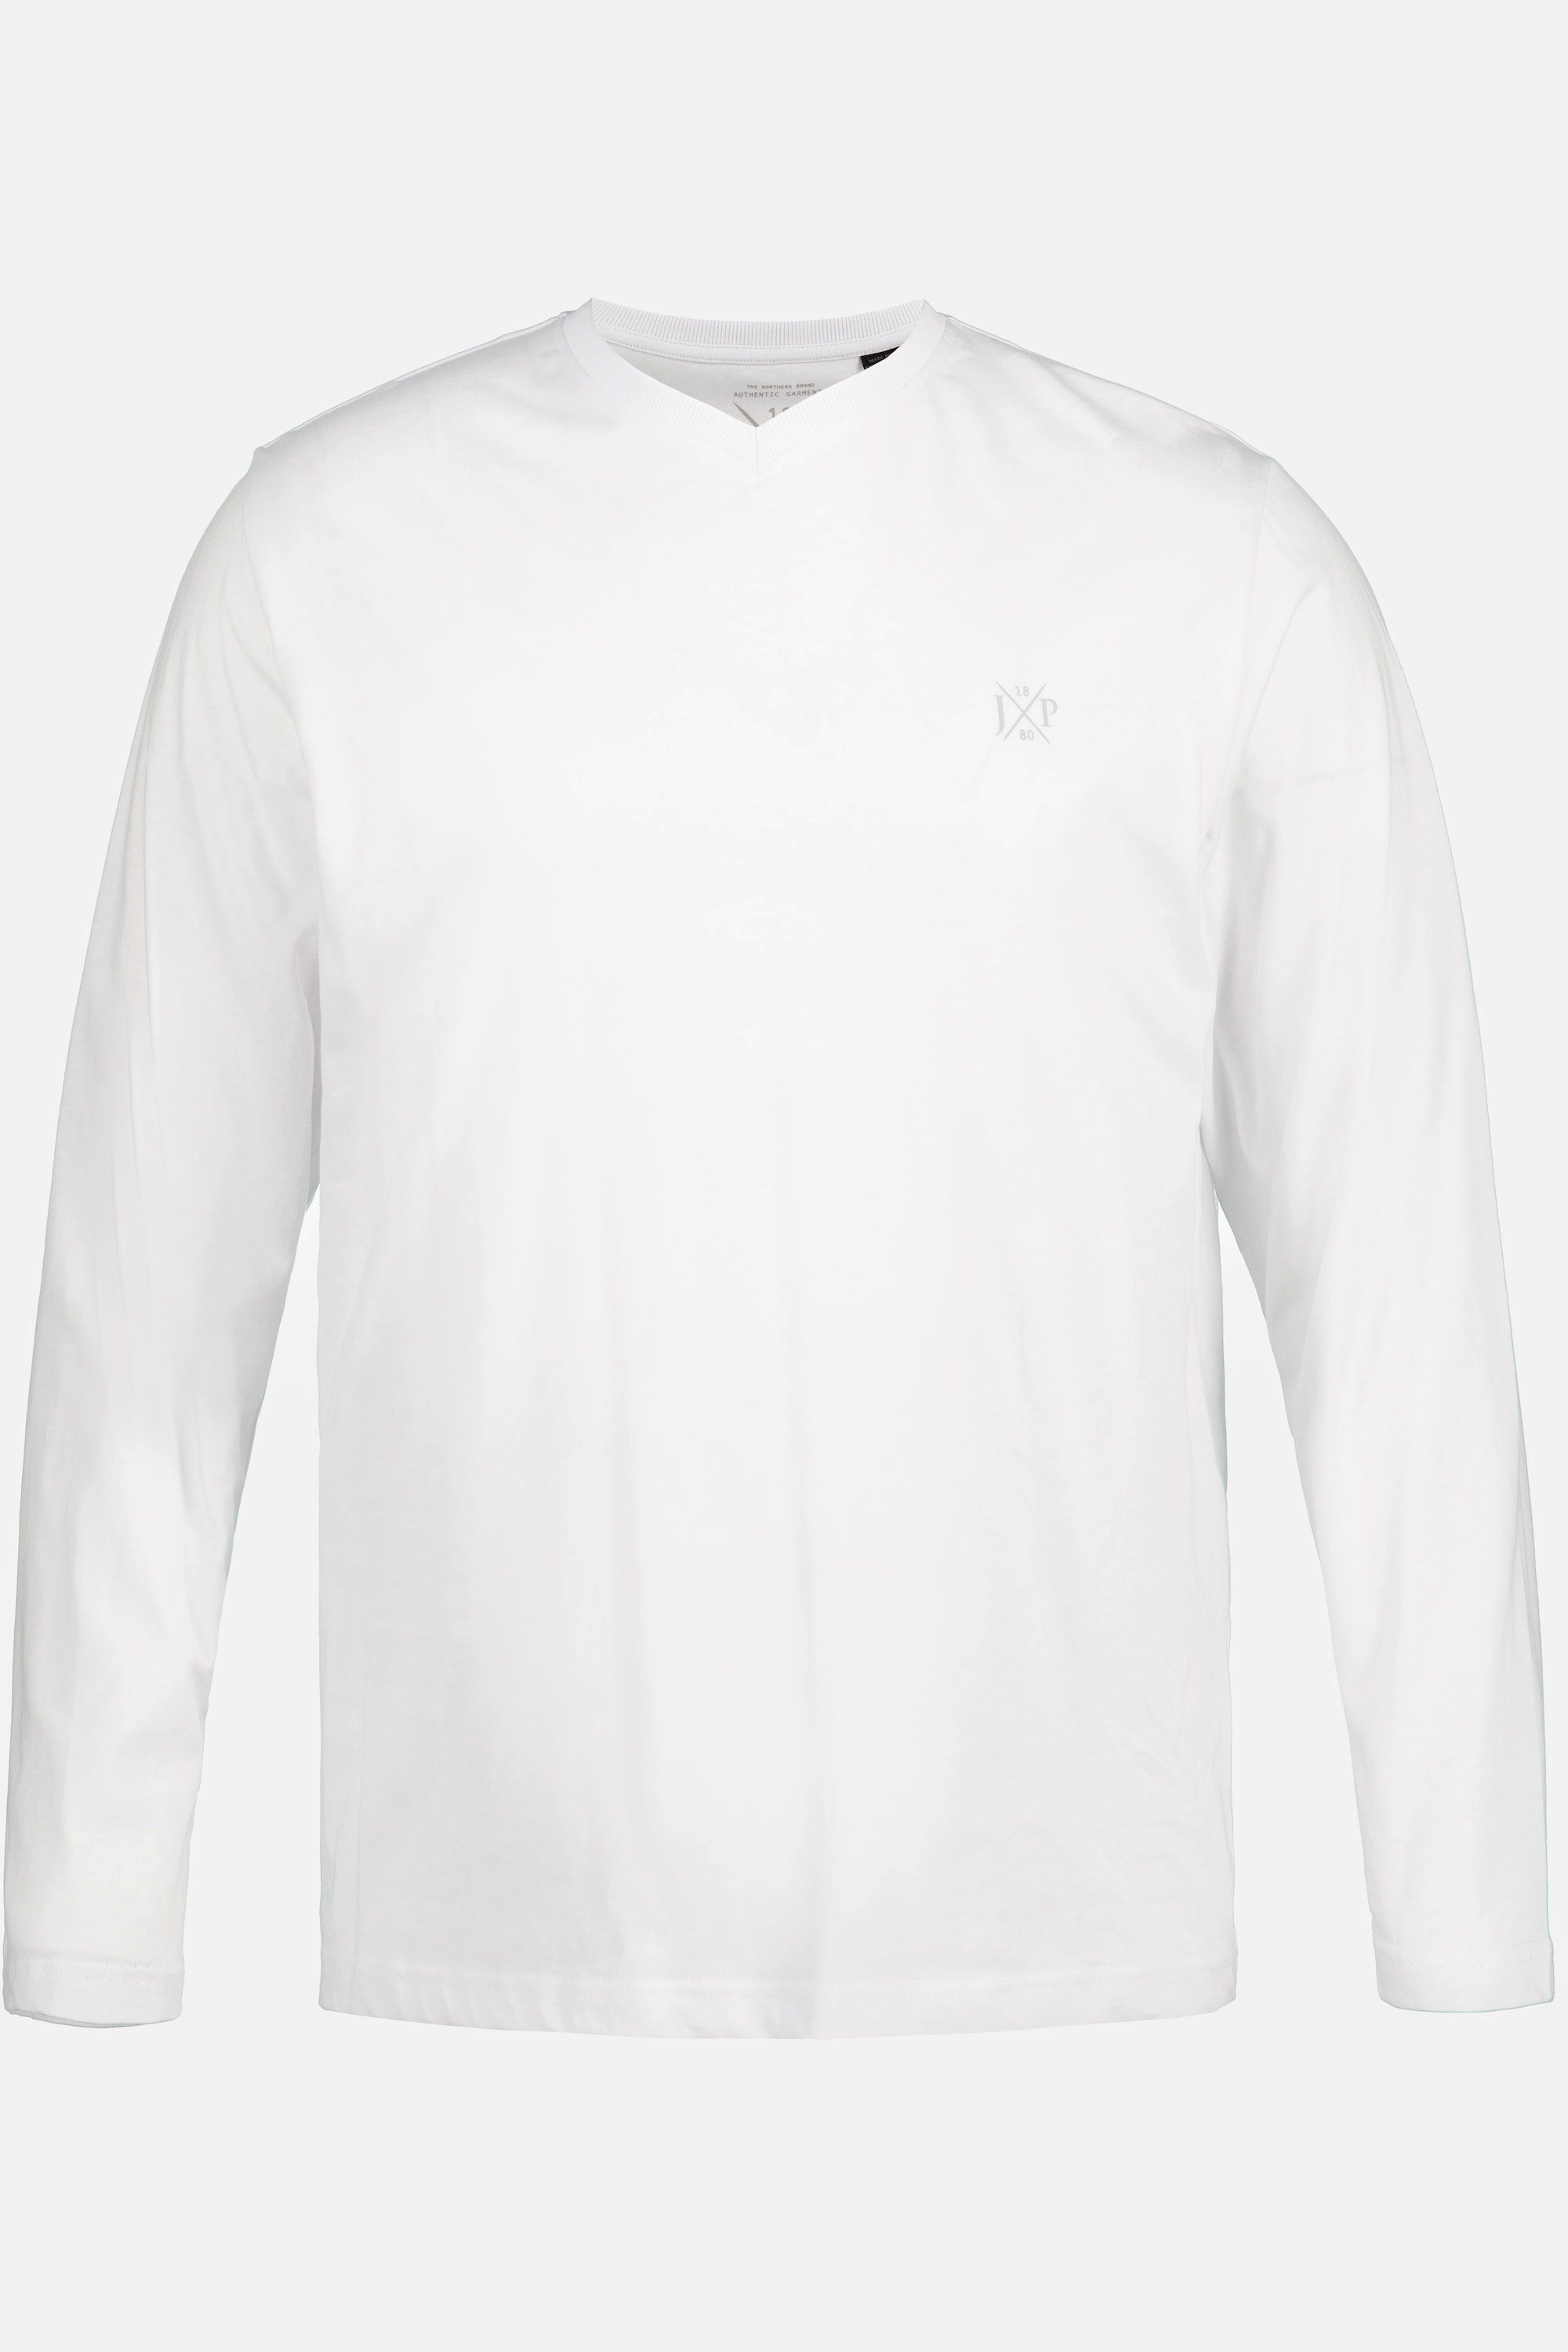 T-Shirt Langarm Langarmshirt V-Ausschnitt 8 bis XL Basic JP1880 schneeweiß